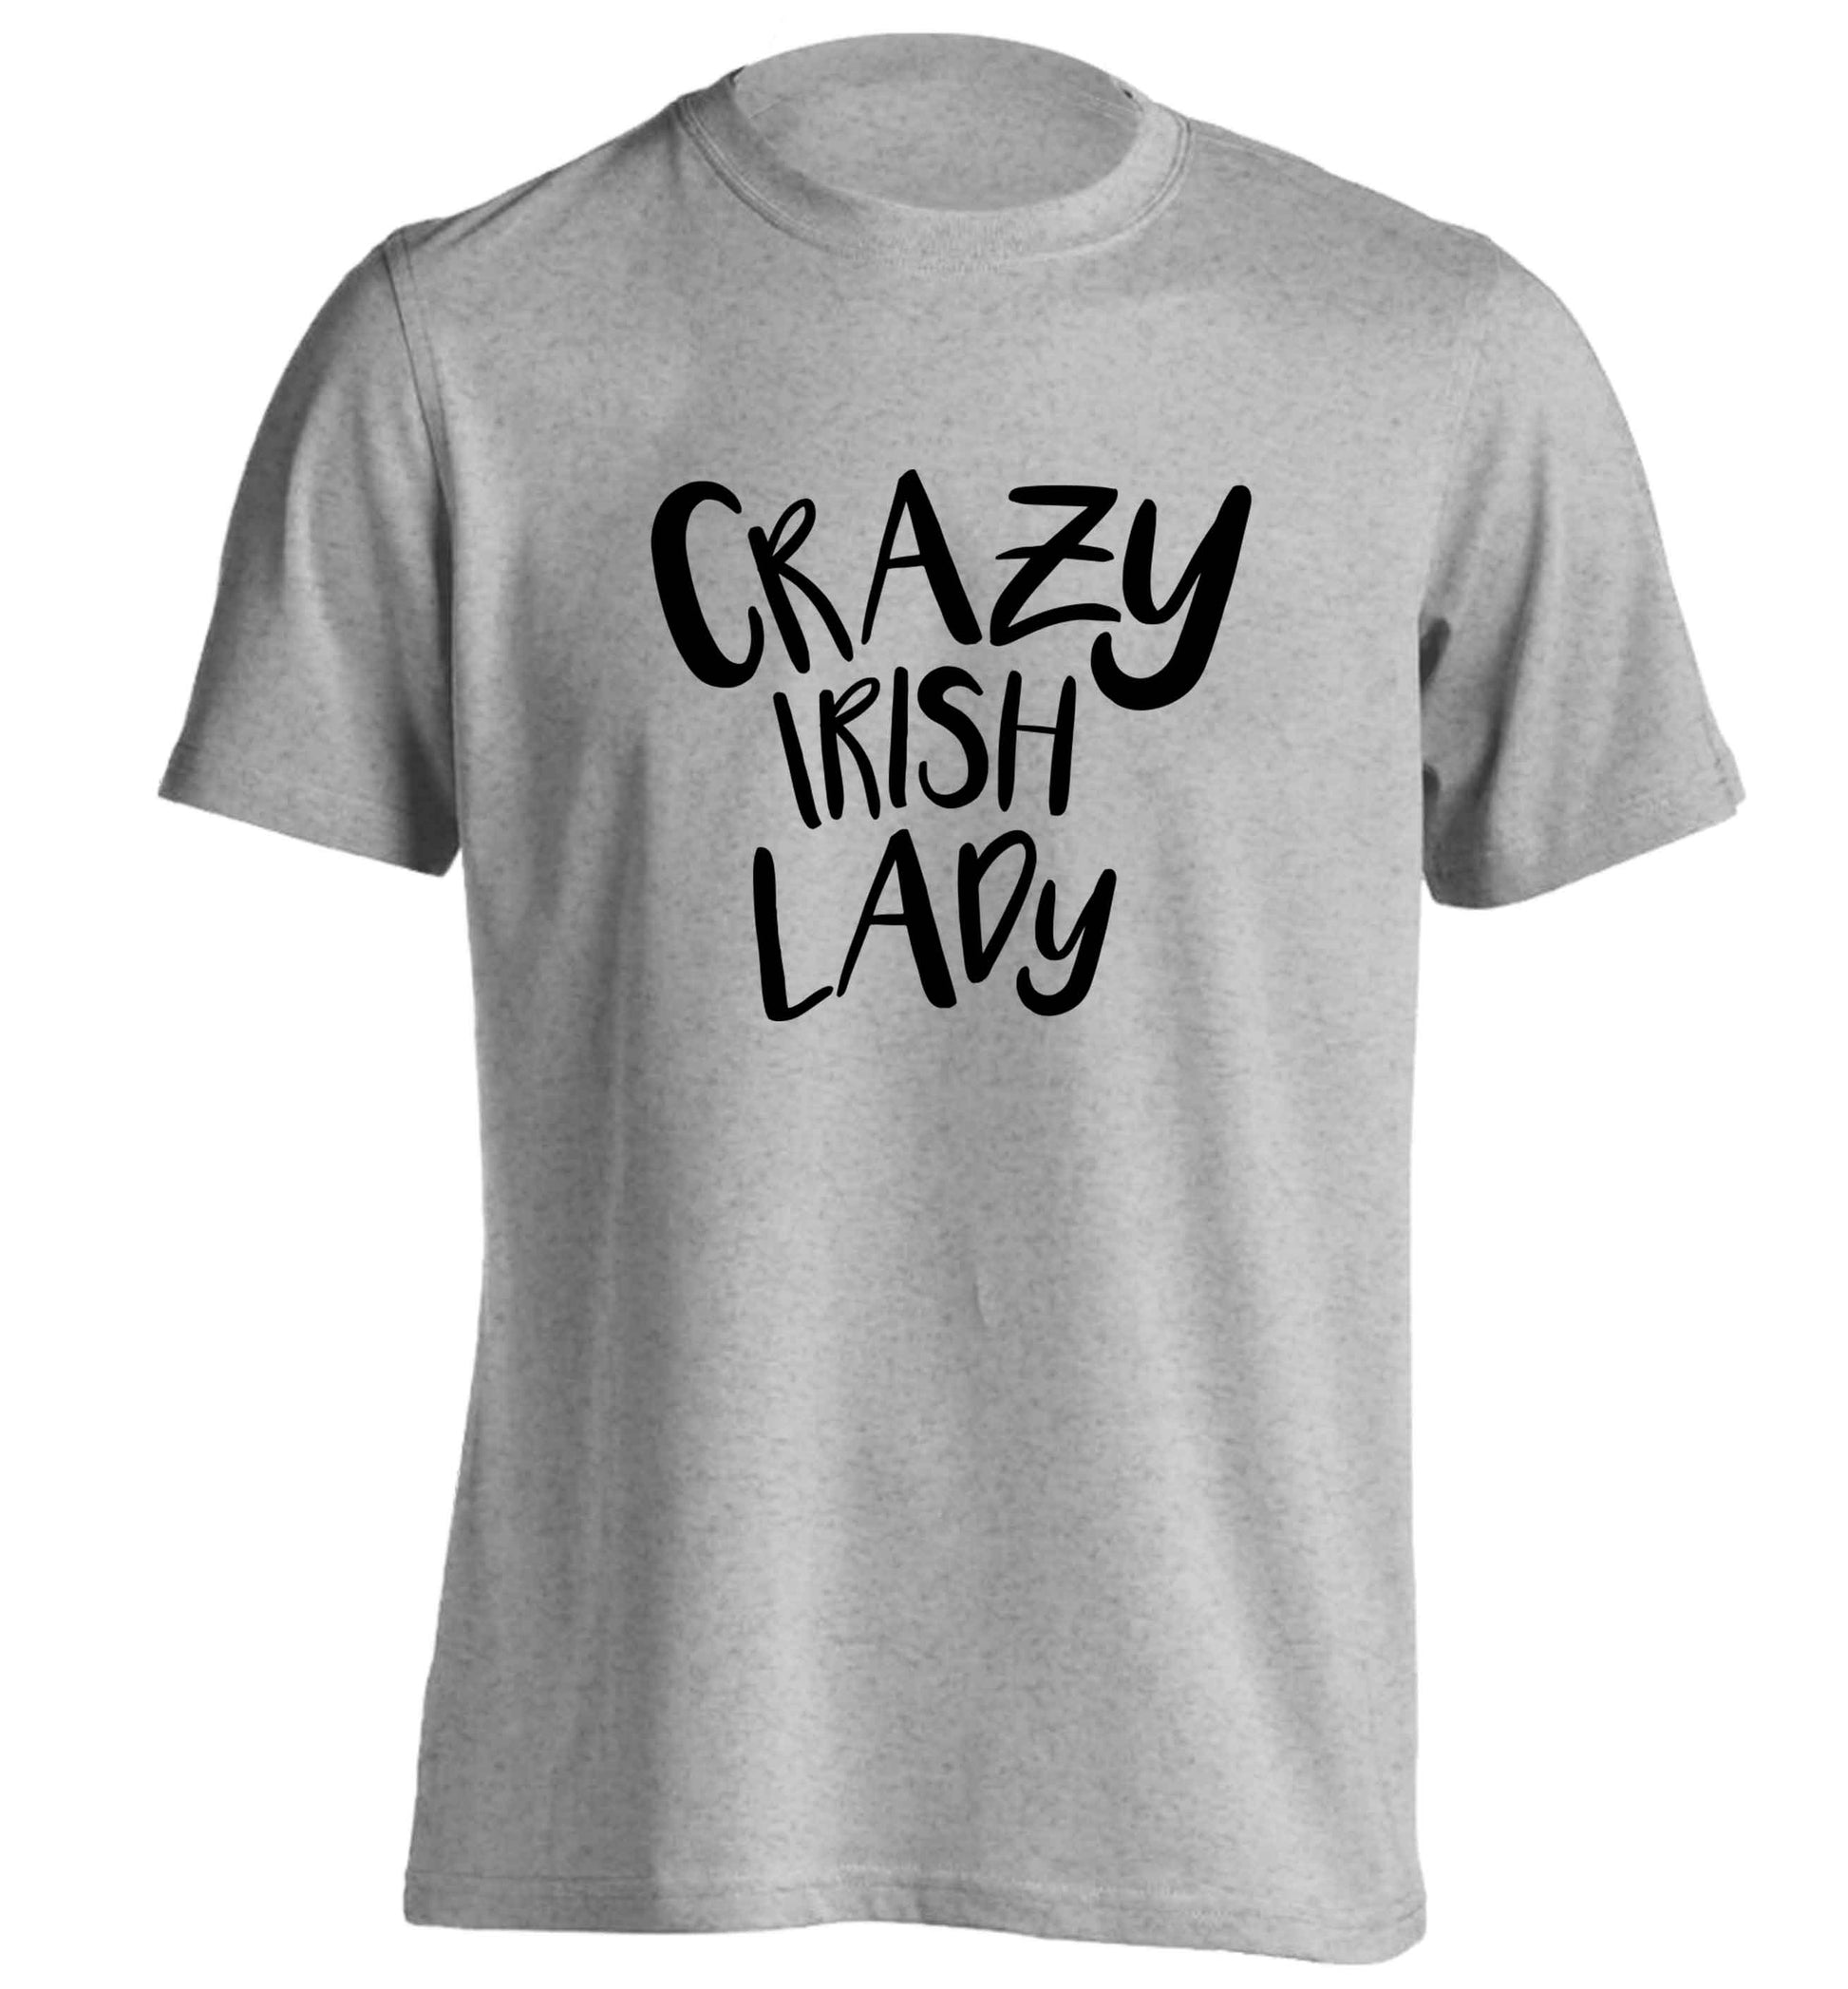 Crazy Irish lady adults unisex grey Tshirt 2XL